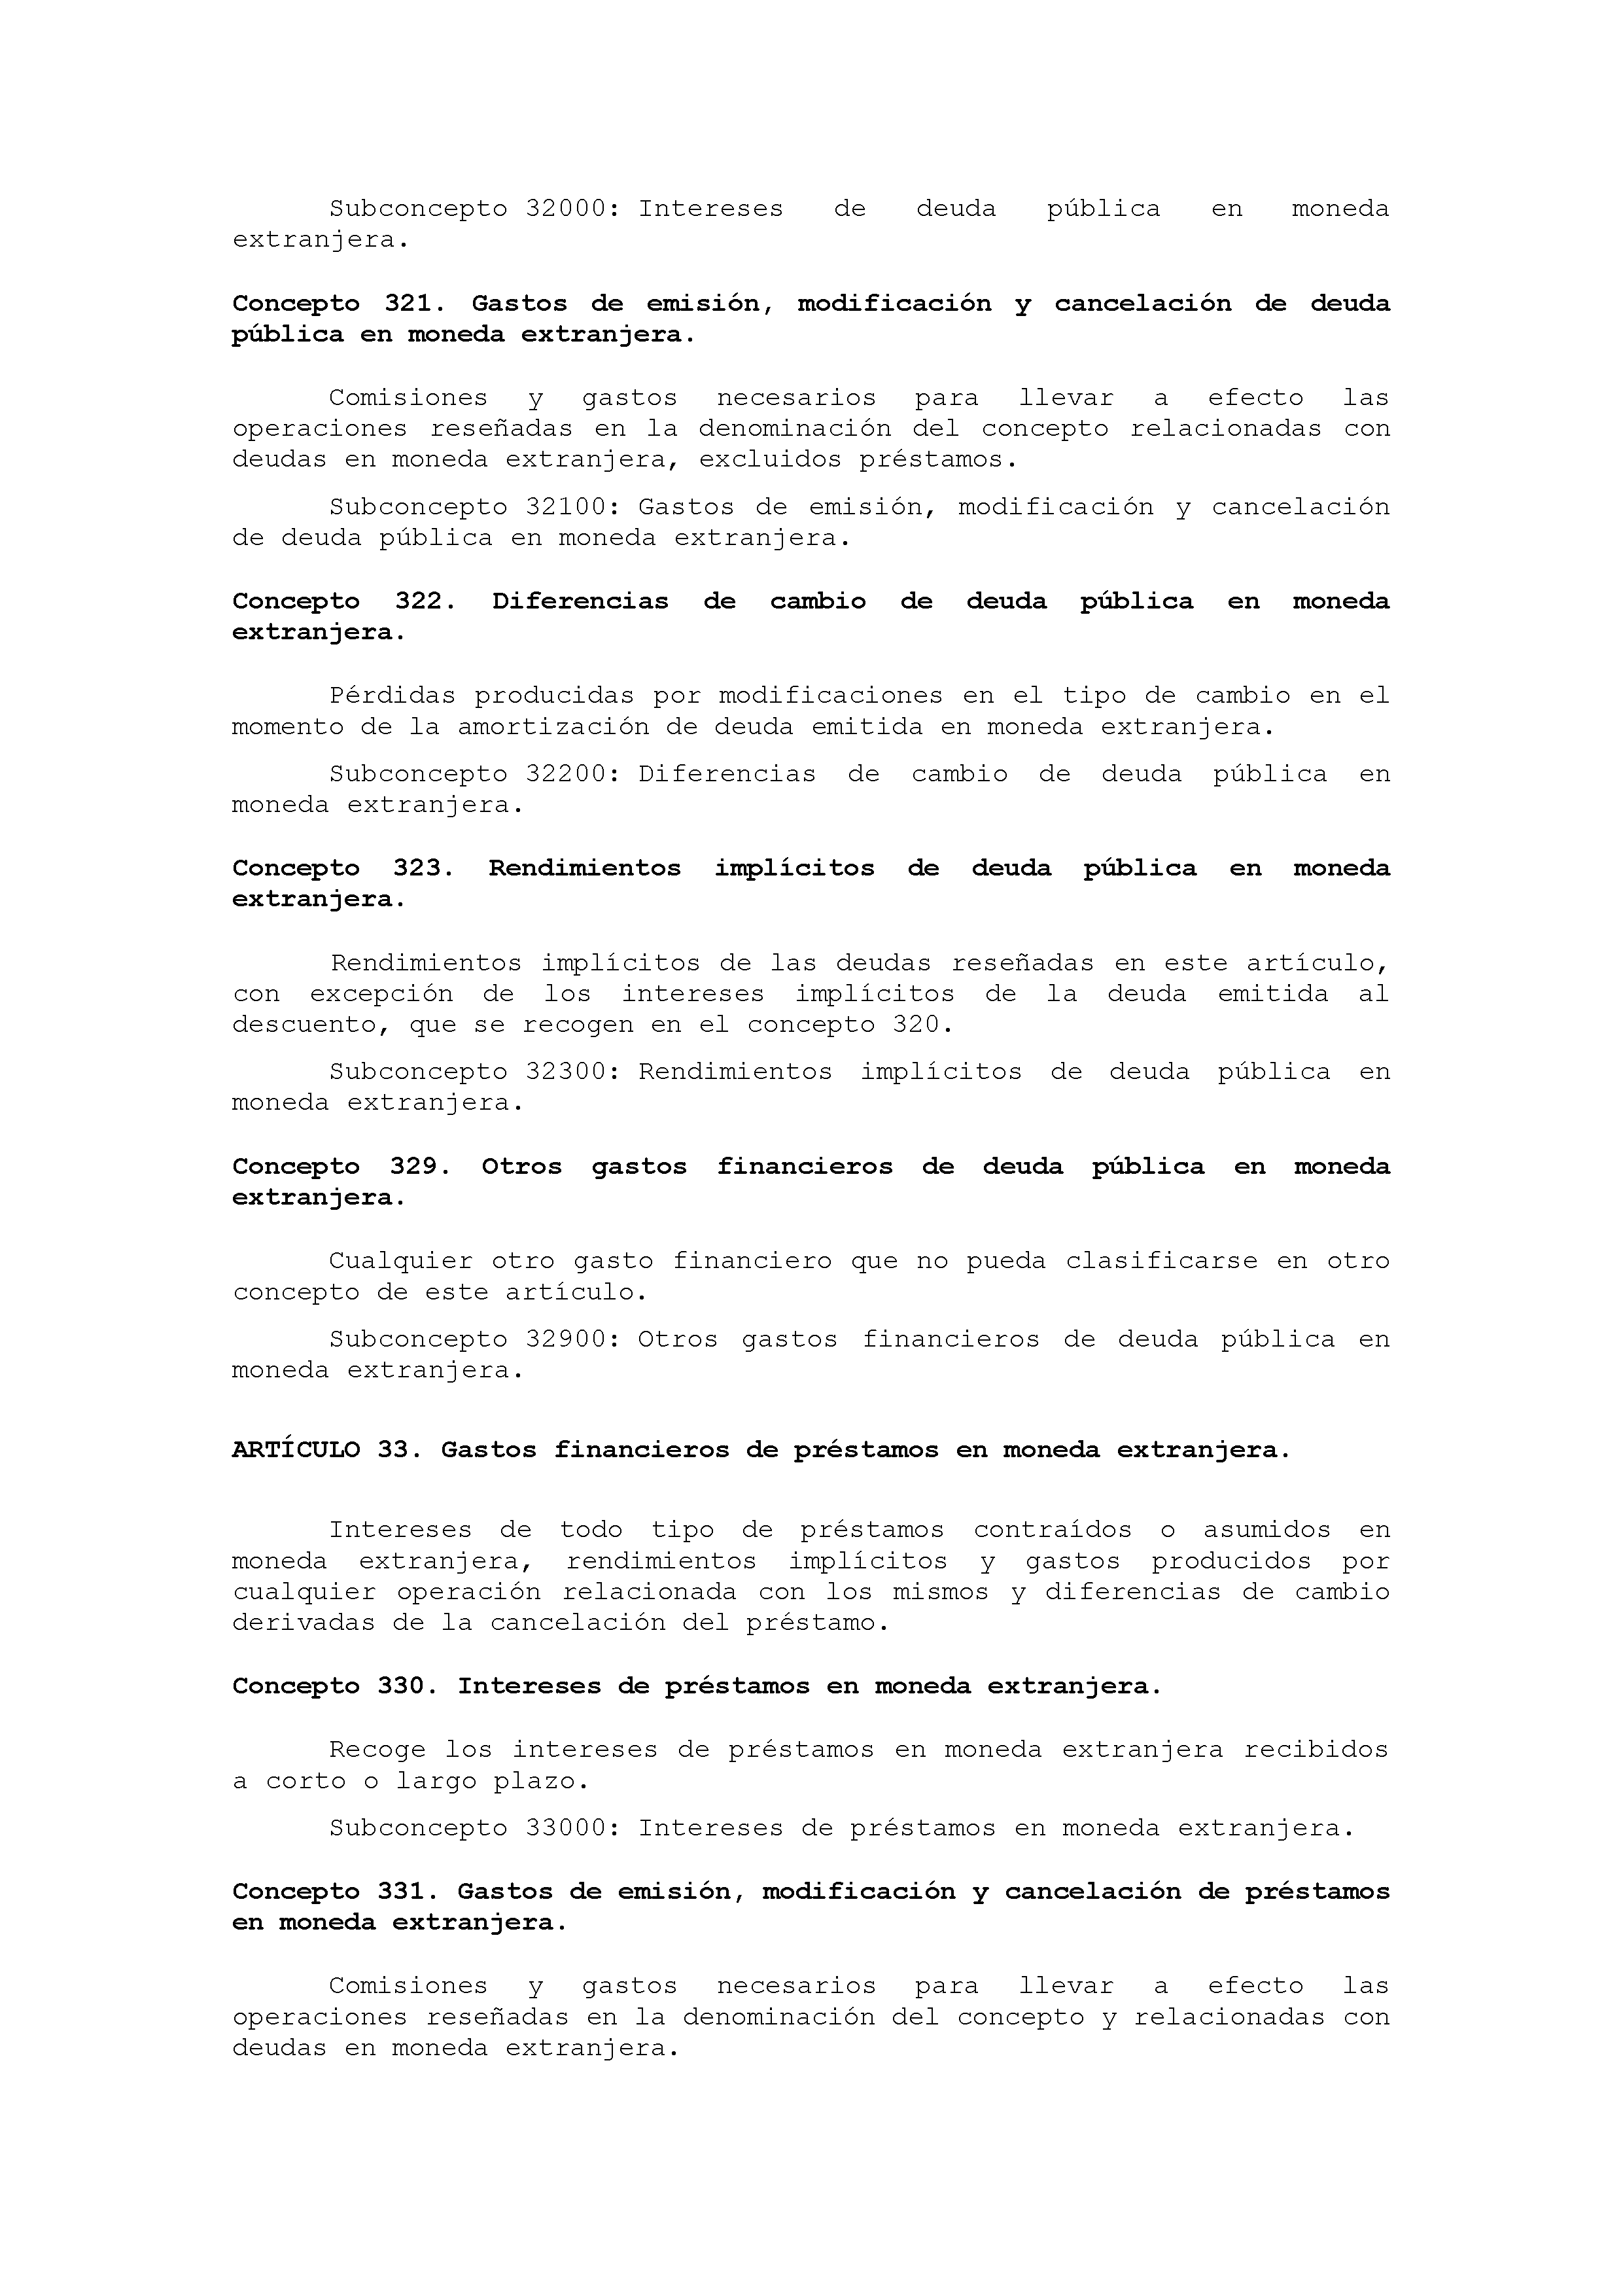 ANEXO IX CÓDIGO DE LA CLASIFICACIÓN ECONÓMICA DE LOS GASTOS PÚBLICOS Pag 29